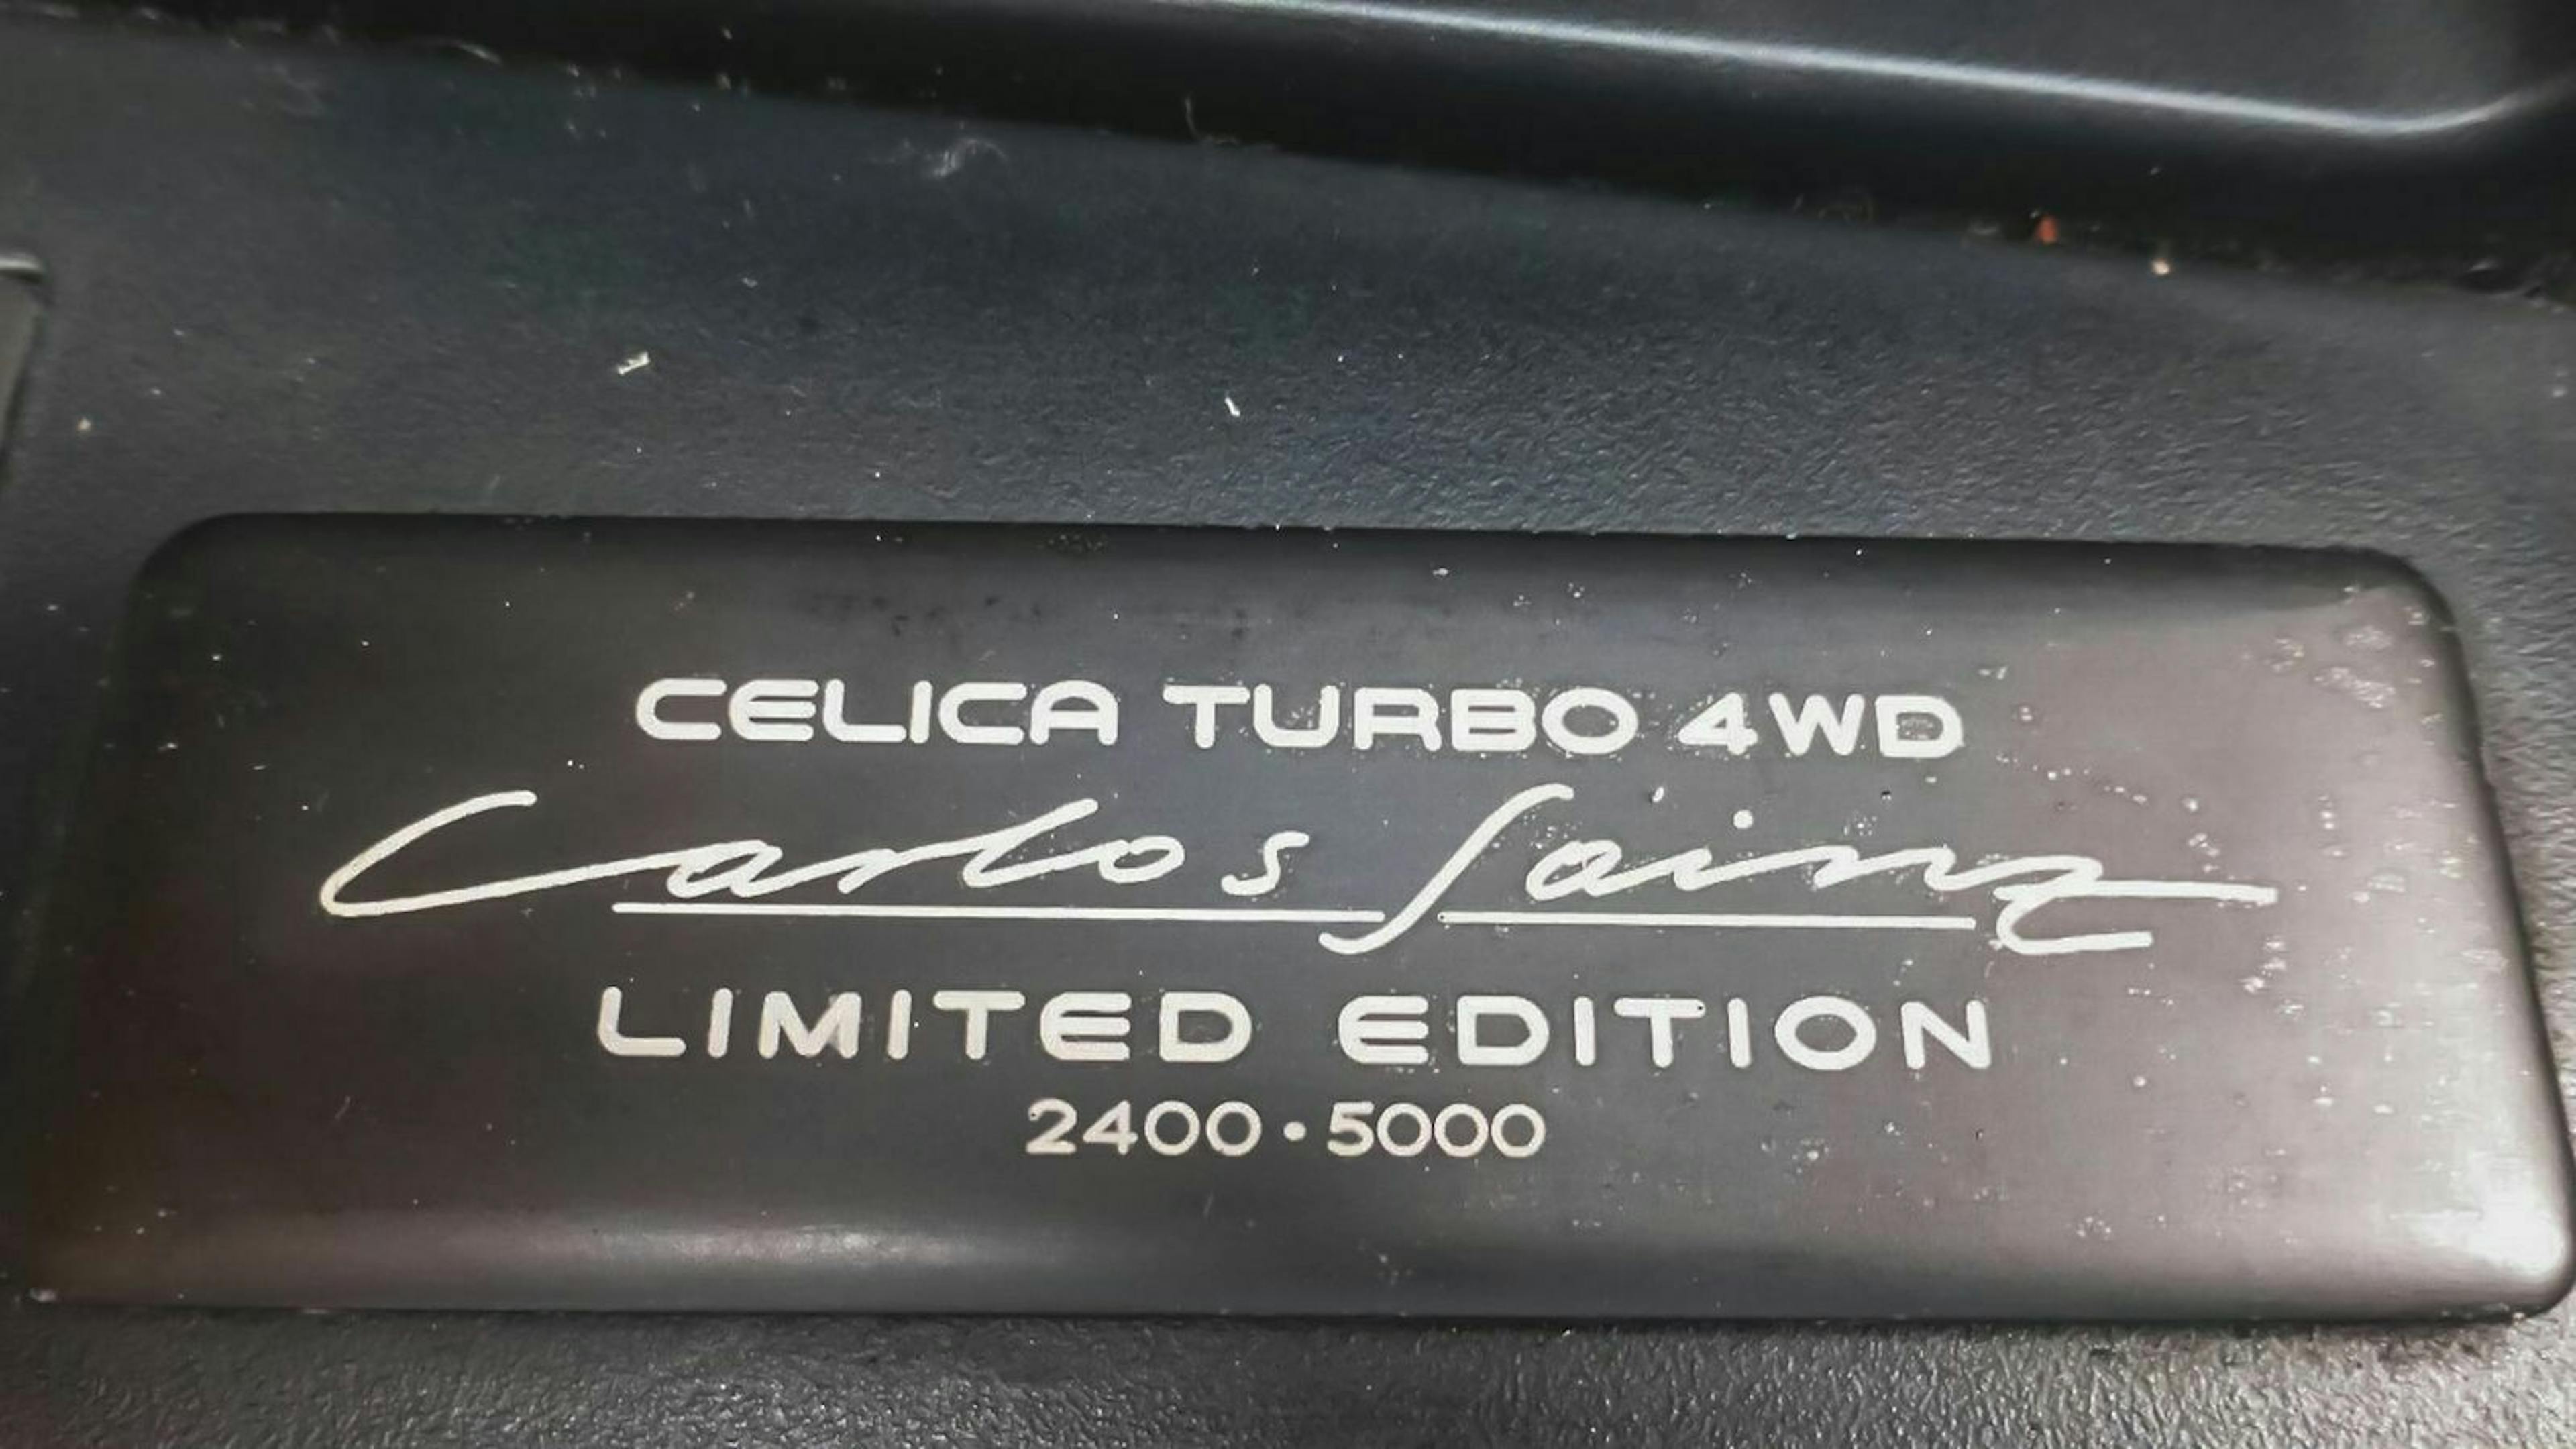 Das Bild zeigt die Echtheits-Plakette eines Toyota Celica Turbo 4WD Carlos Sainz